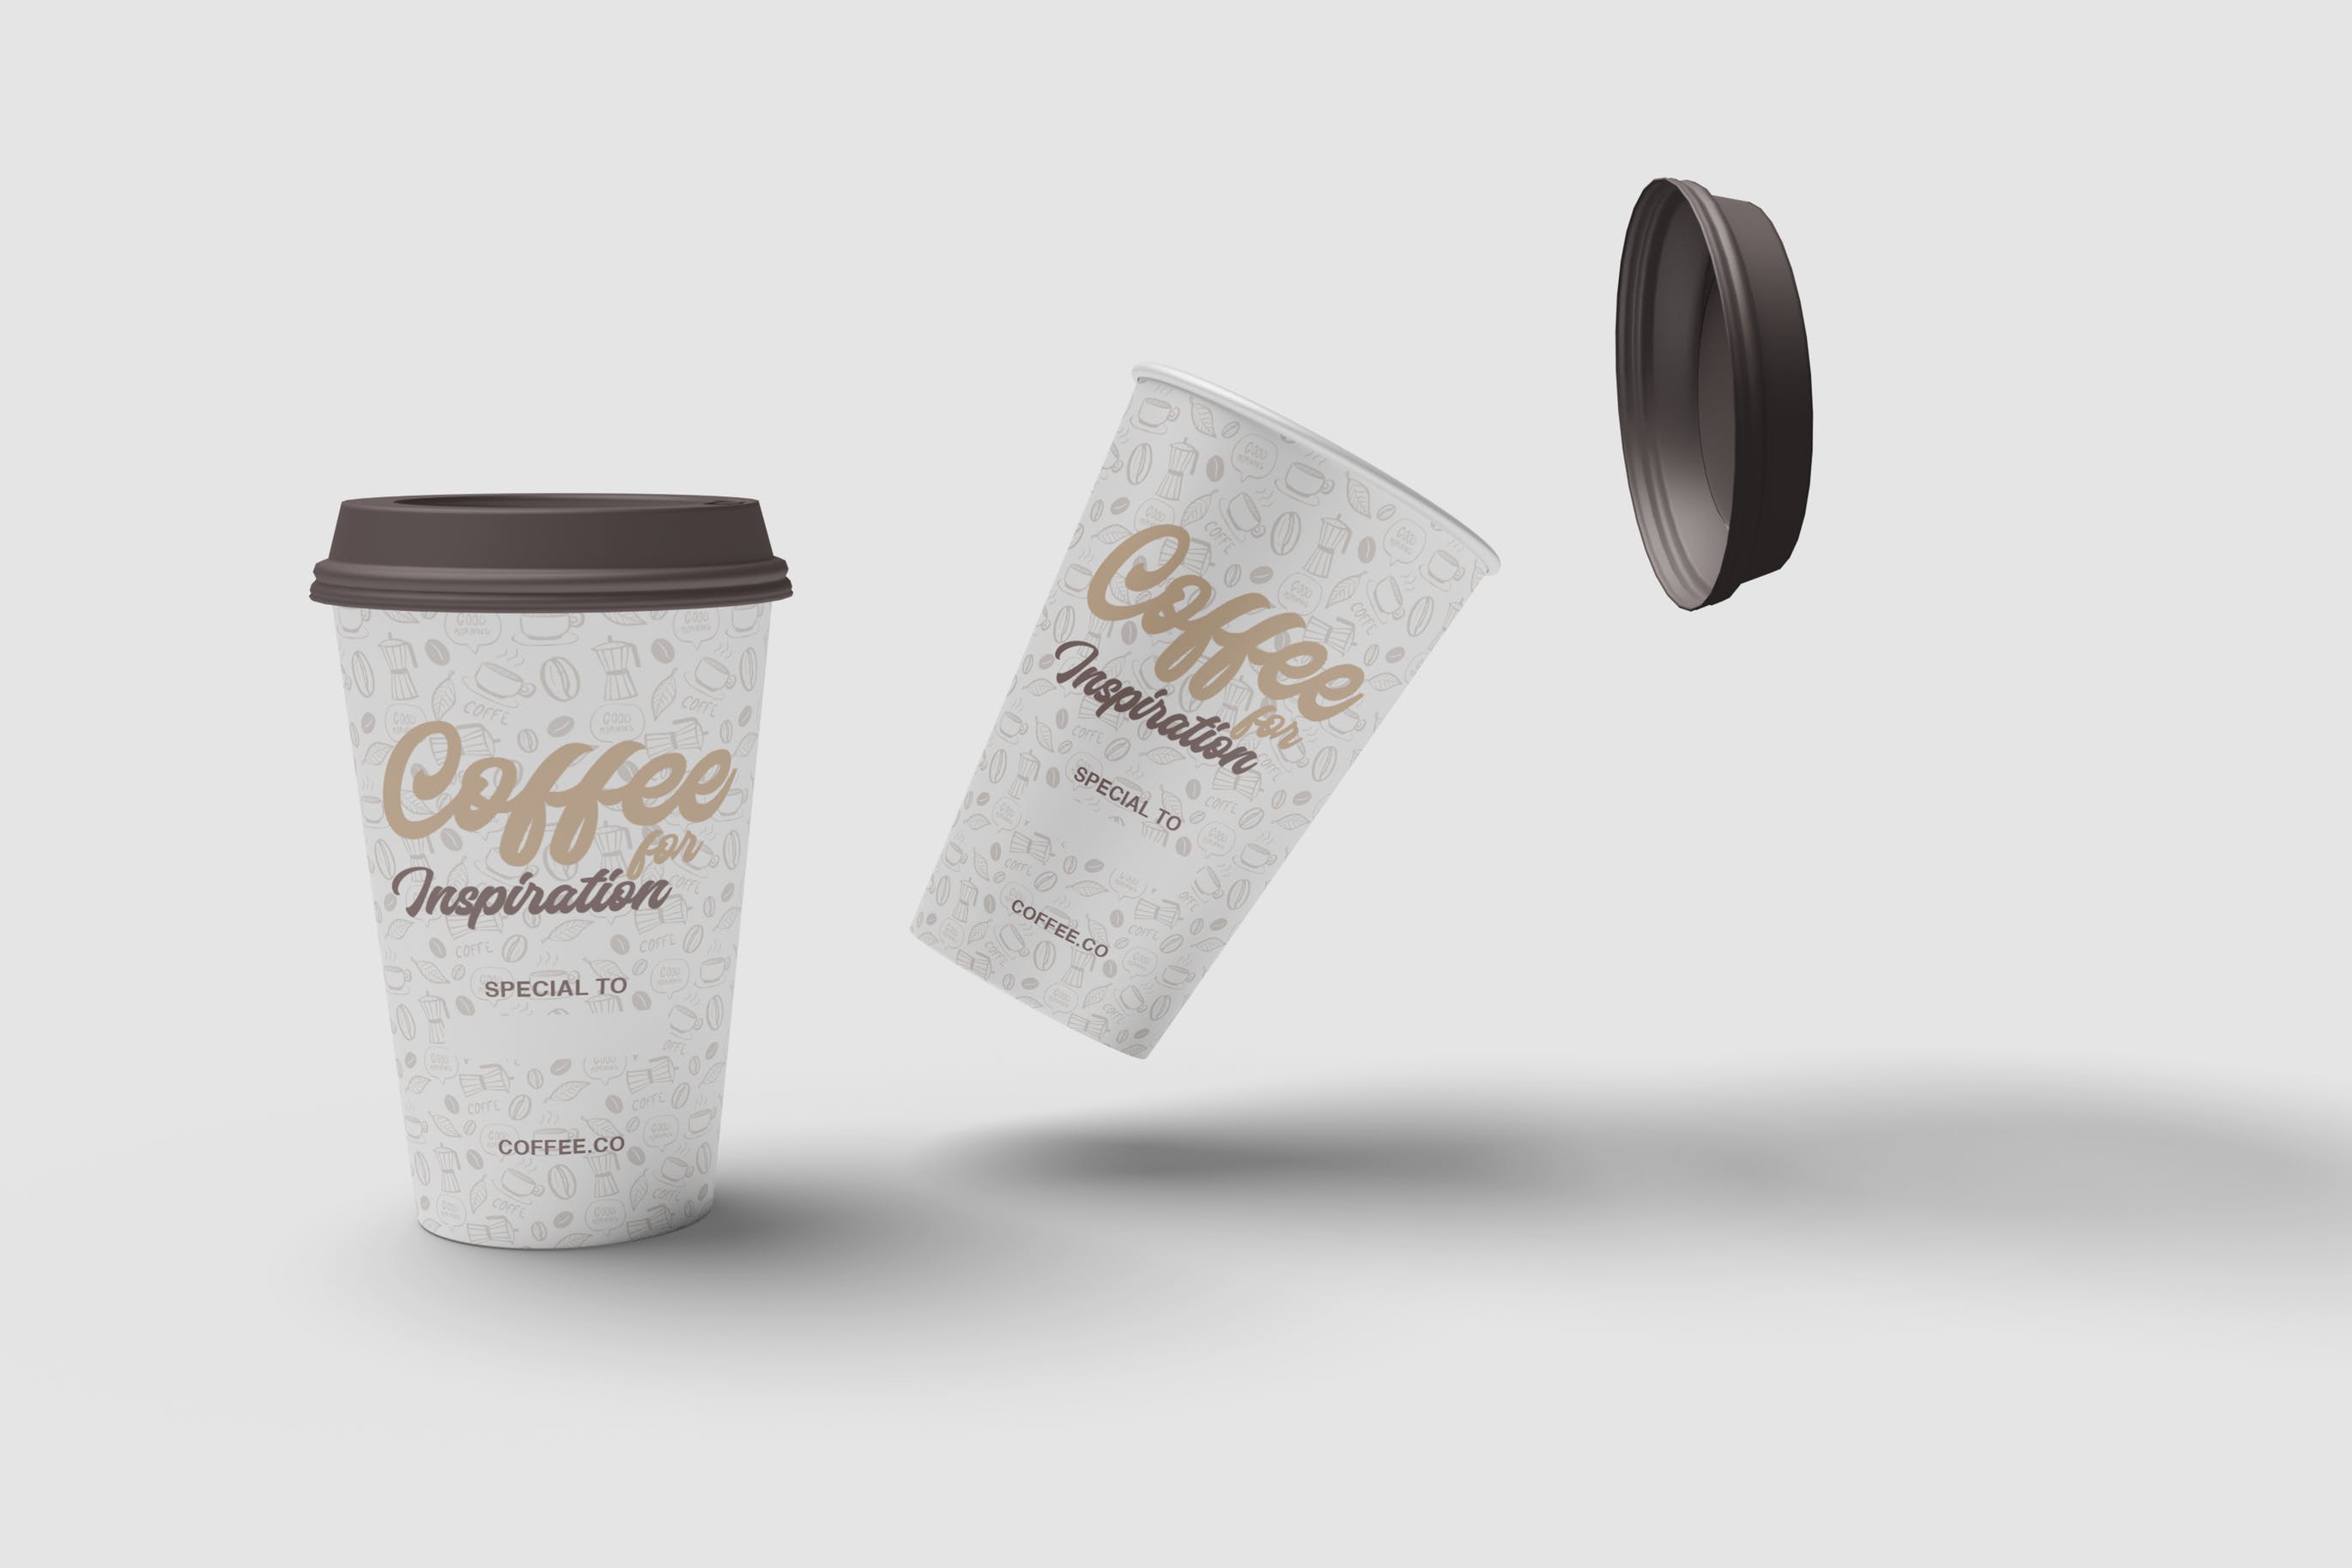 咖啡纸杯外观图案设计预览第一素材精选 Cup of Coffee Mockup插图